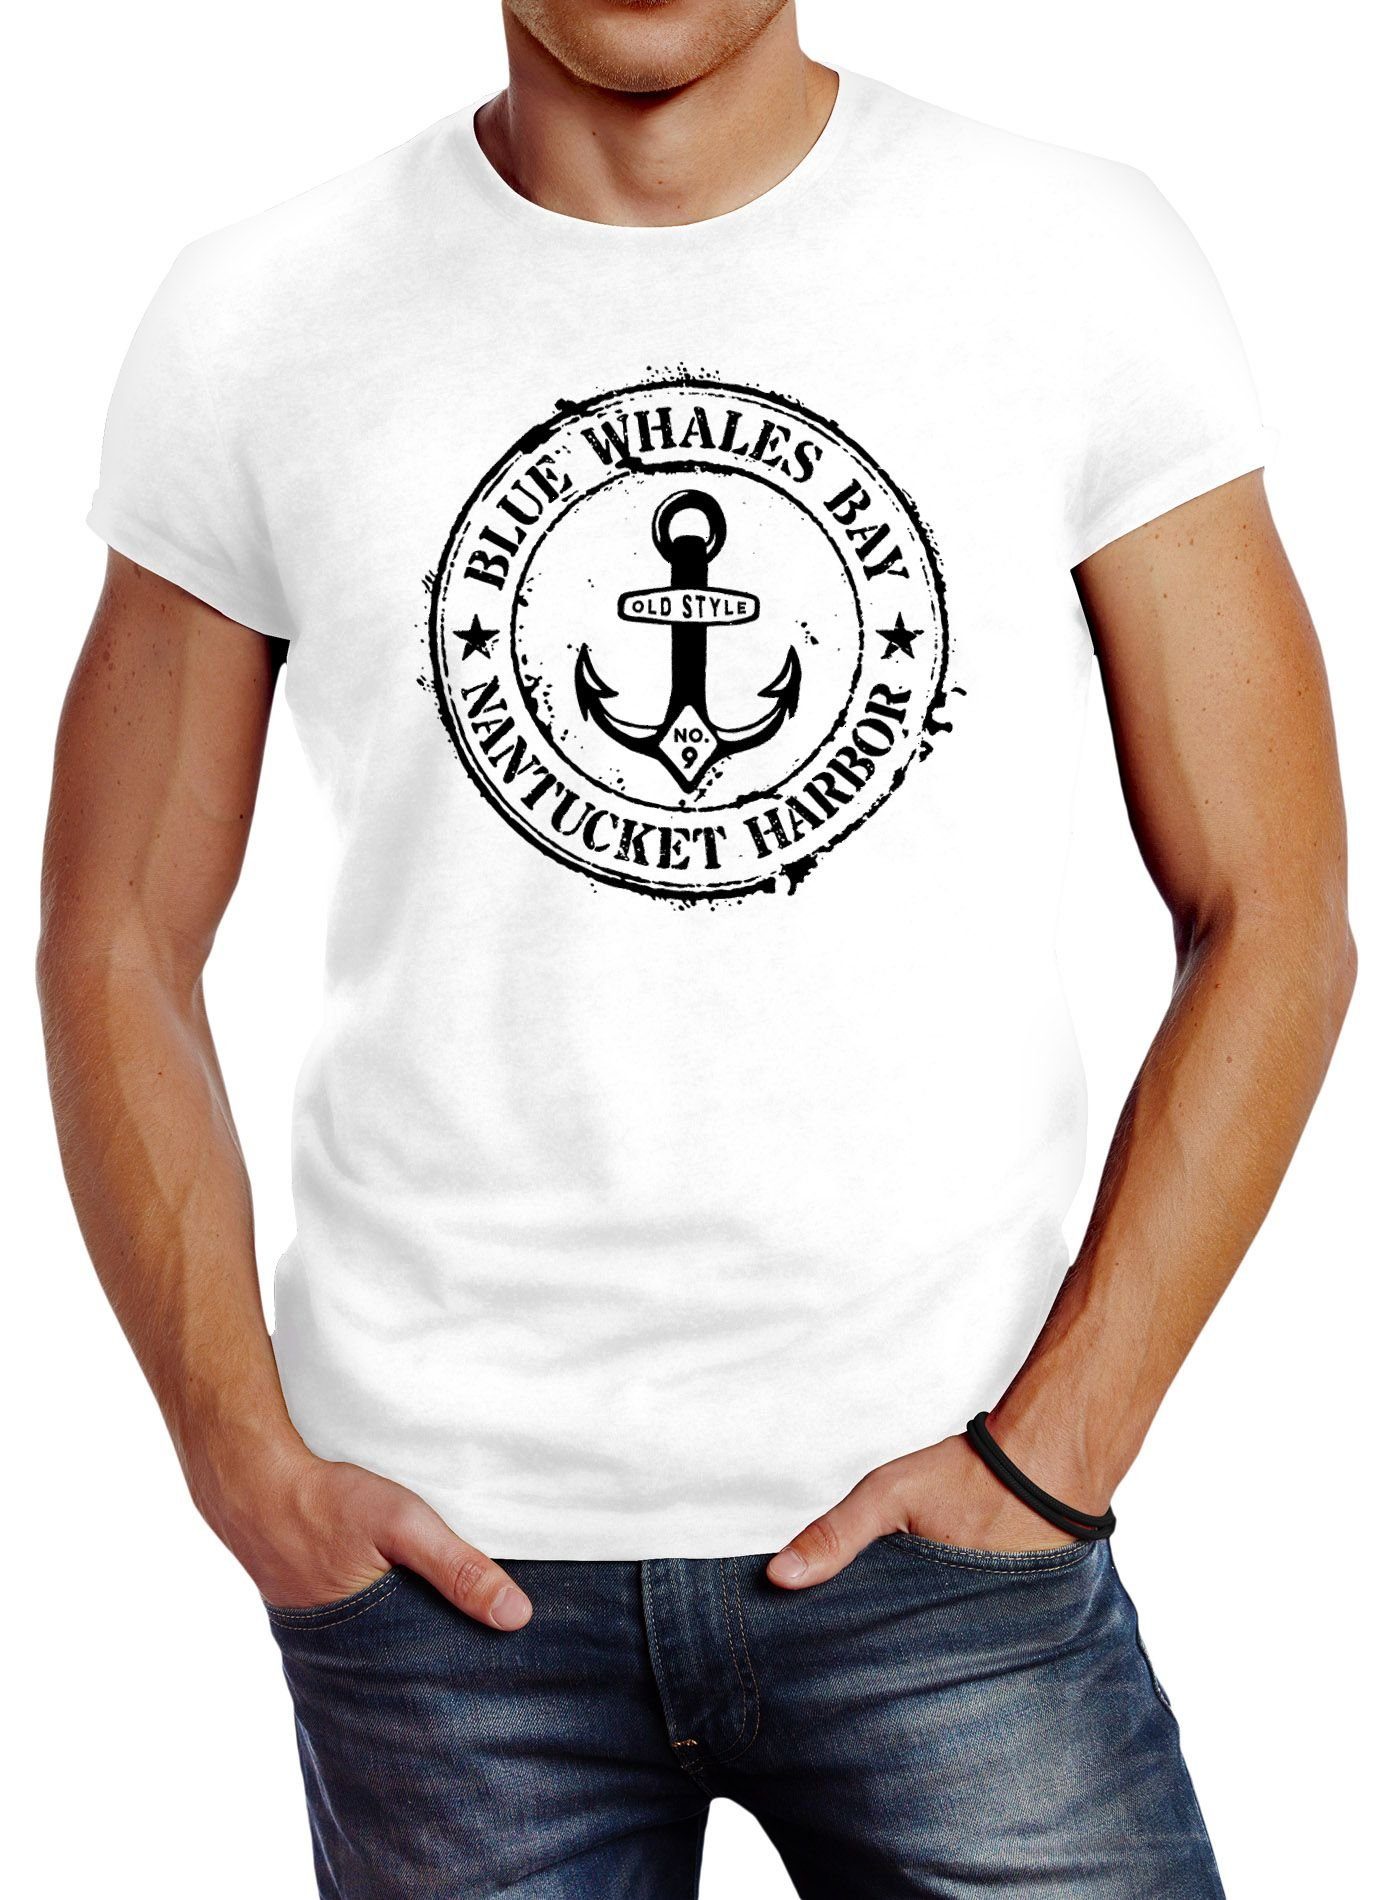 Next Sommer Shirt T-Shirt Kurzarmshirt Anker Maritim Motiv gestreift Gr 56 62 